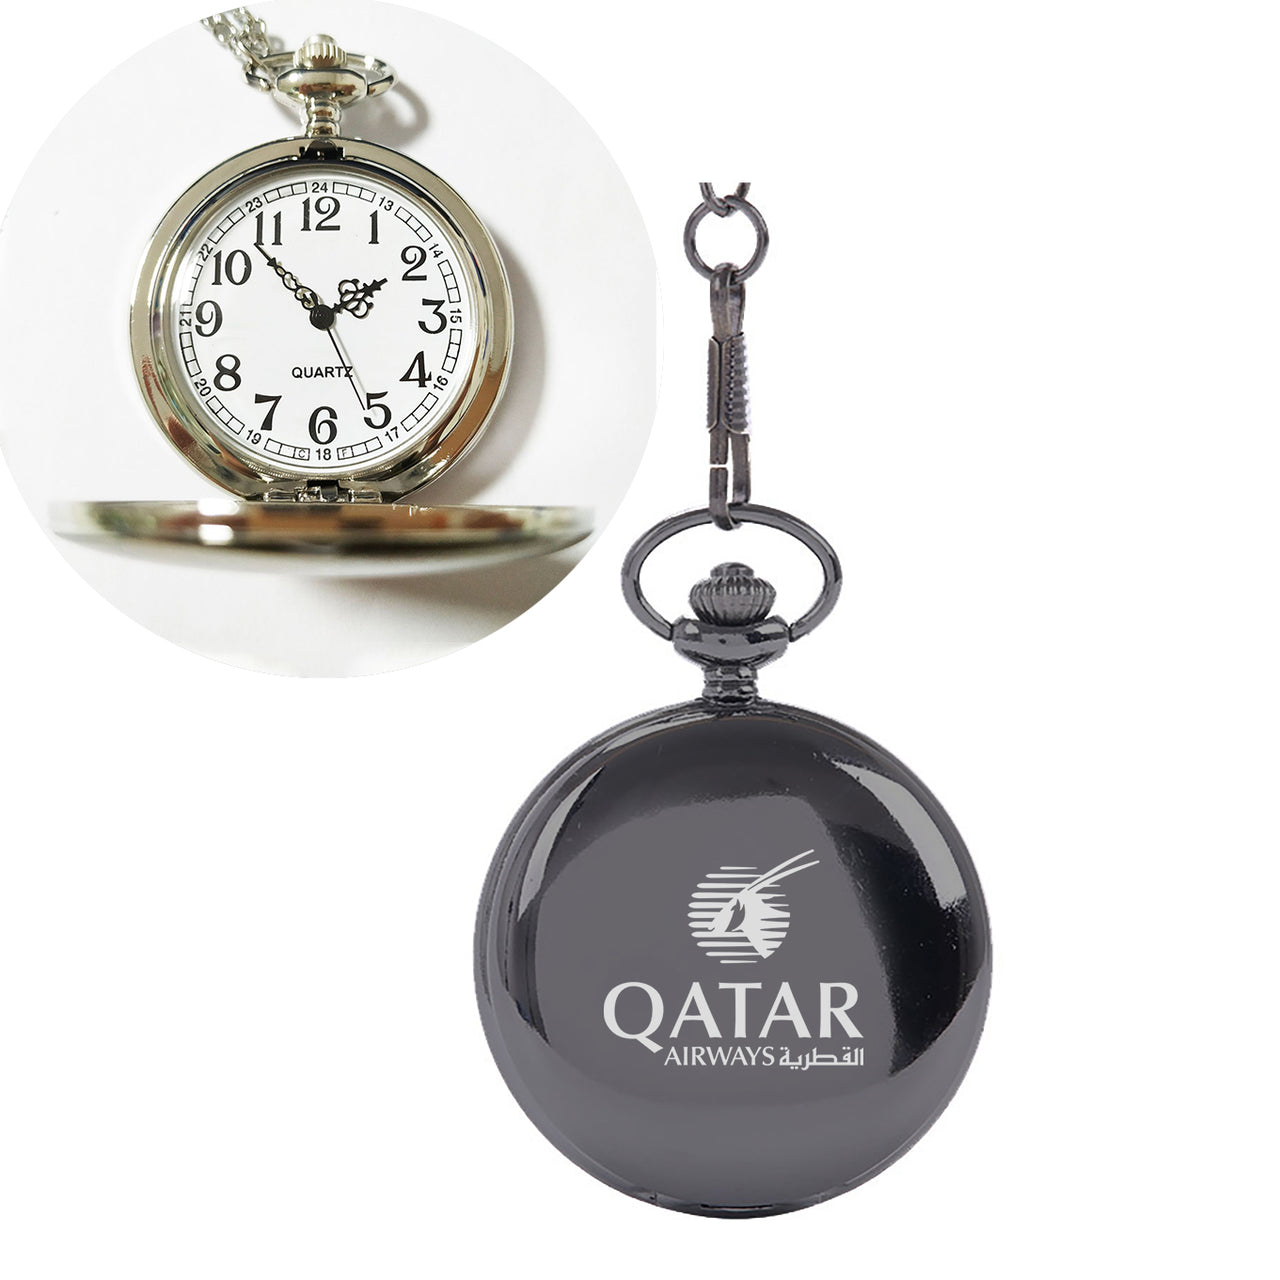 Qatar Airways Airlines Designed Pocket Watches